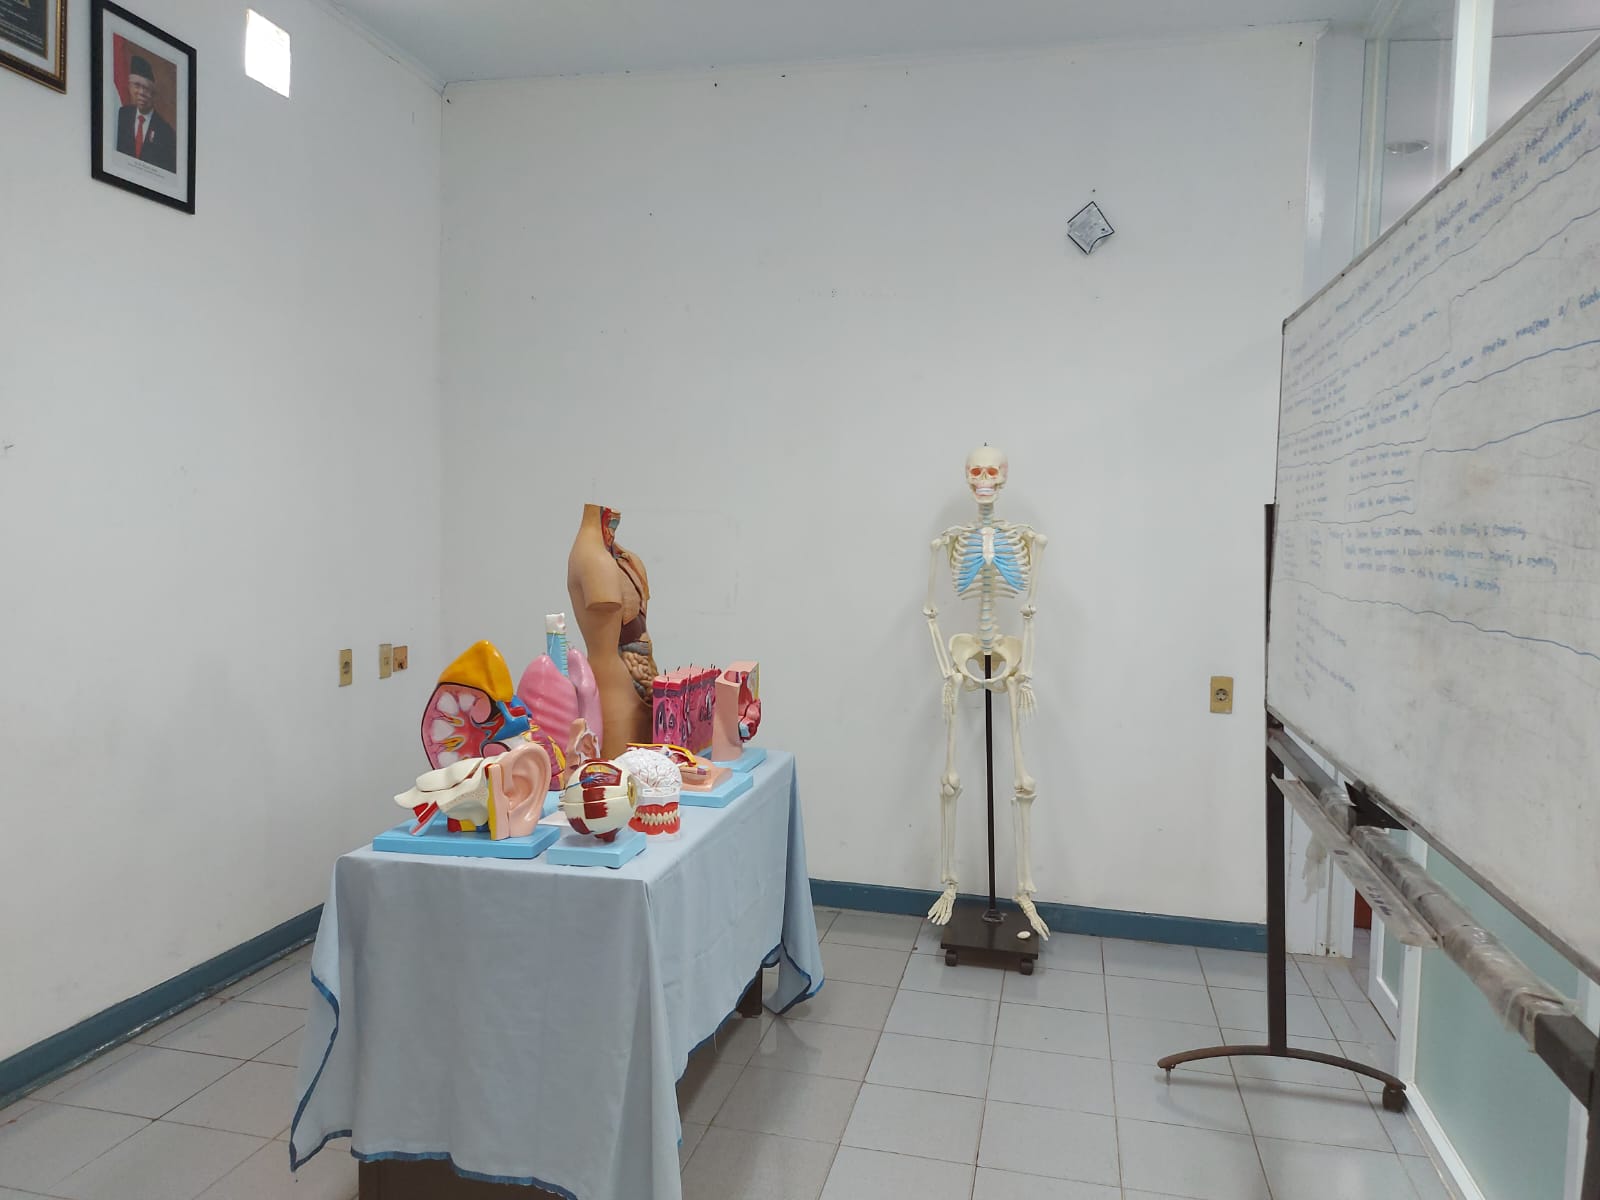 Laboratorium Anatomi